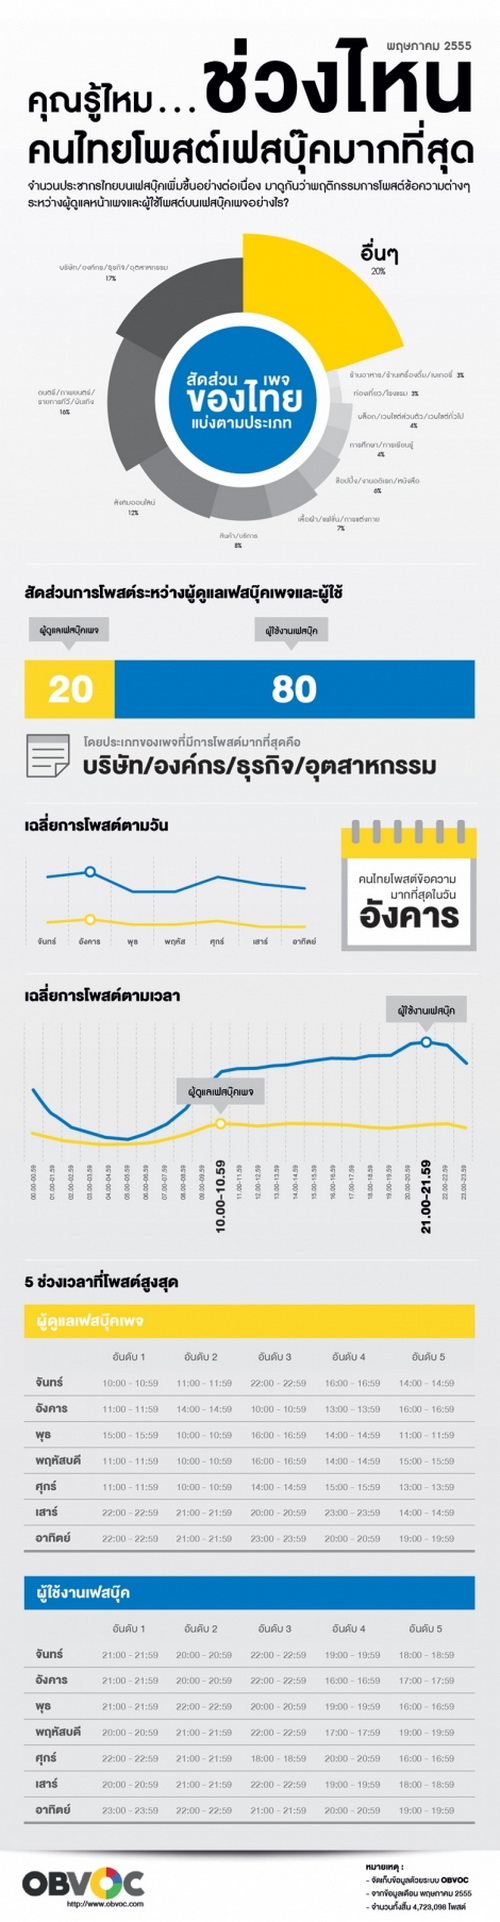 วันอังคาร คือวันที่คนไทยใช้ Facebook & Twitter มากที่สุด